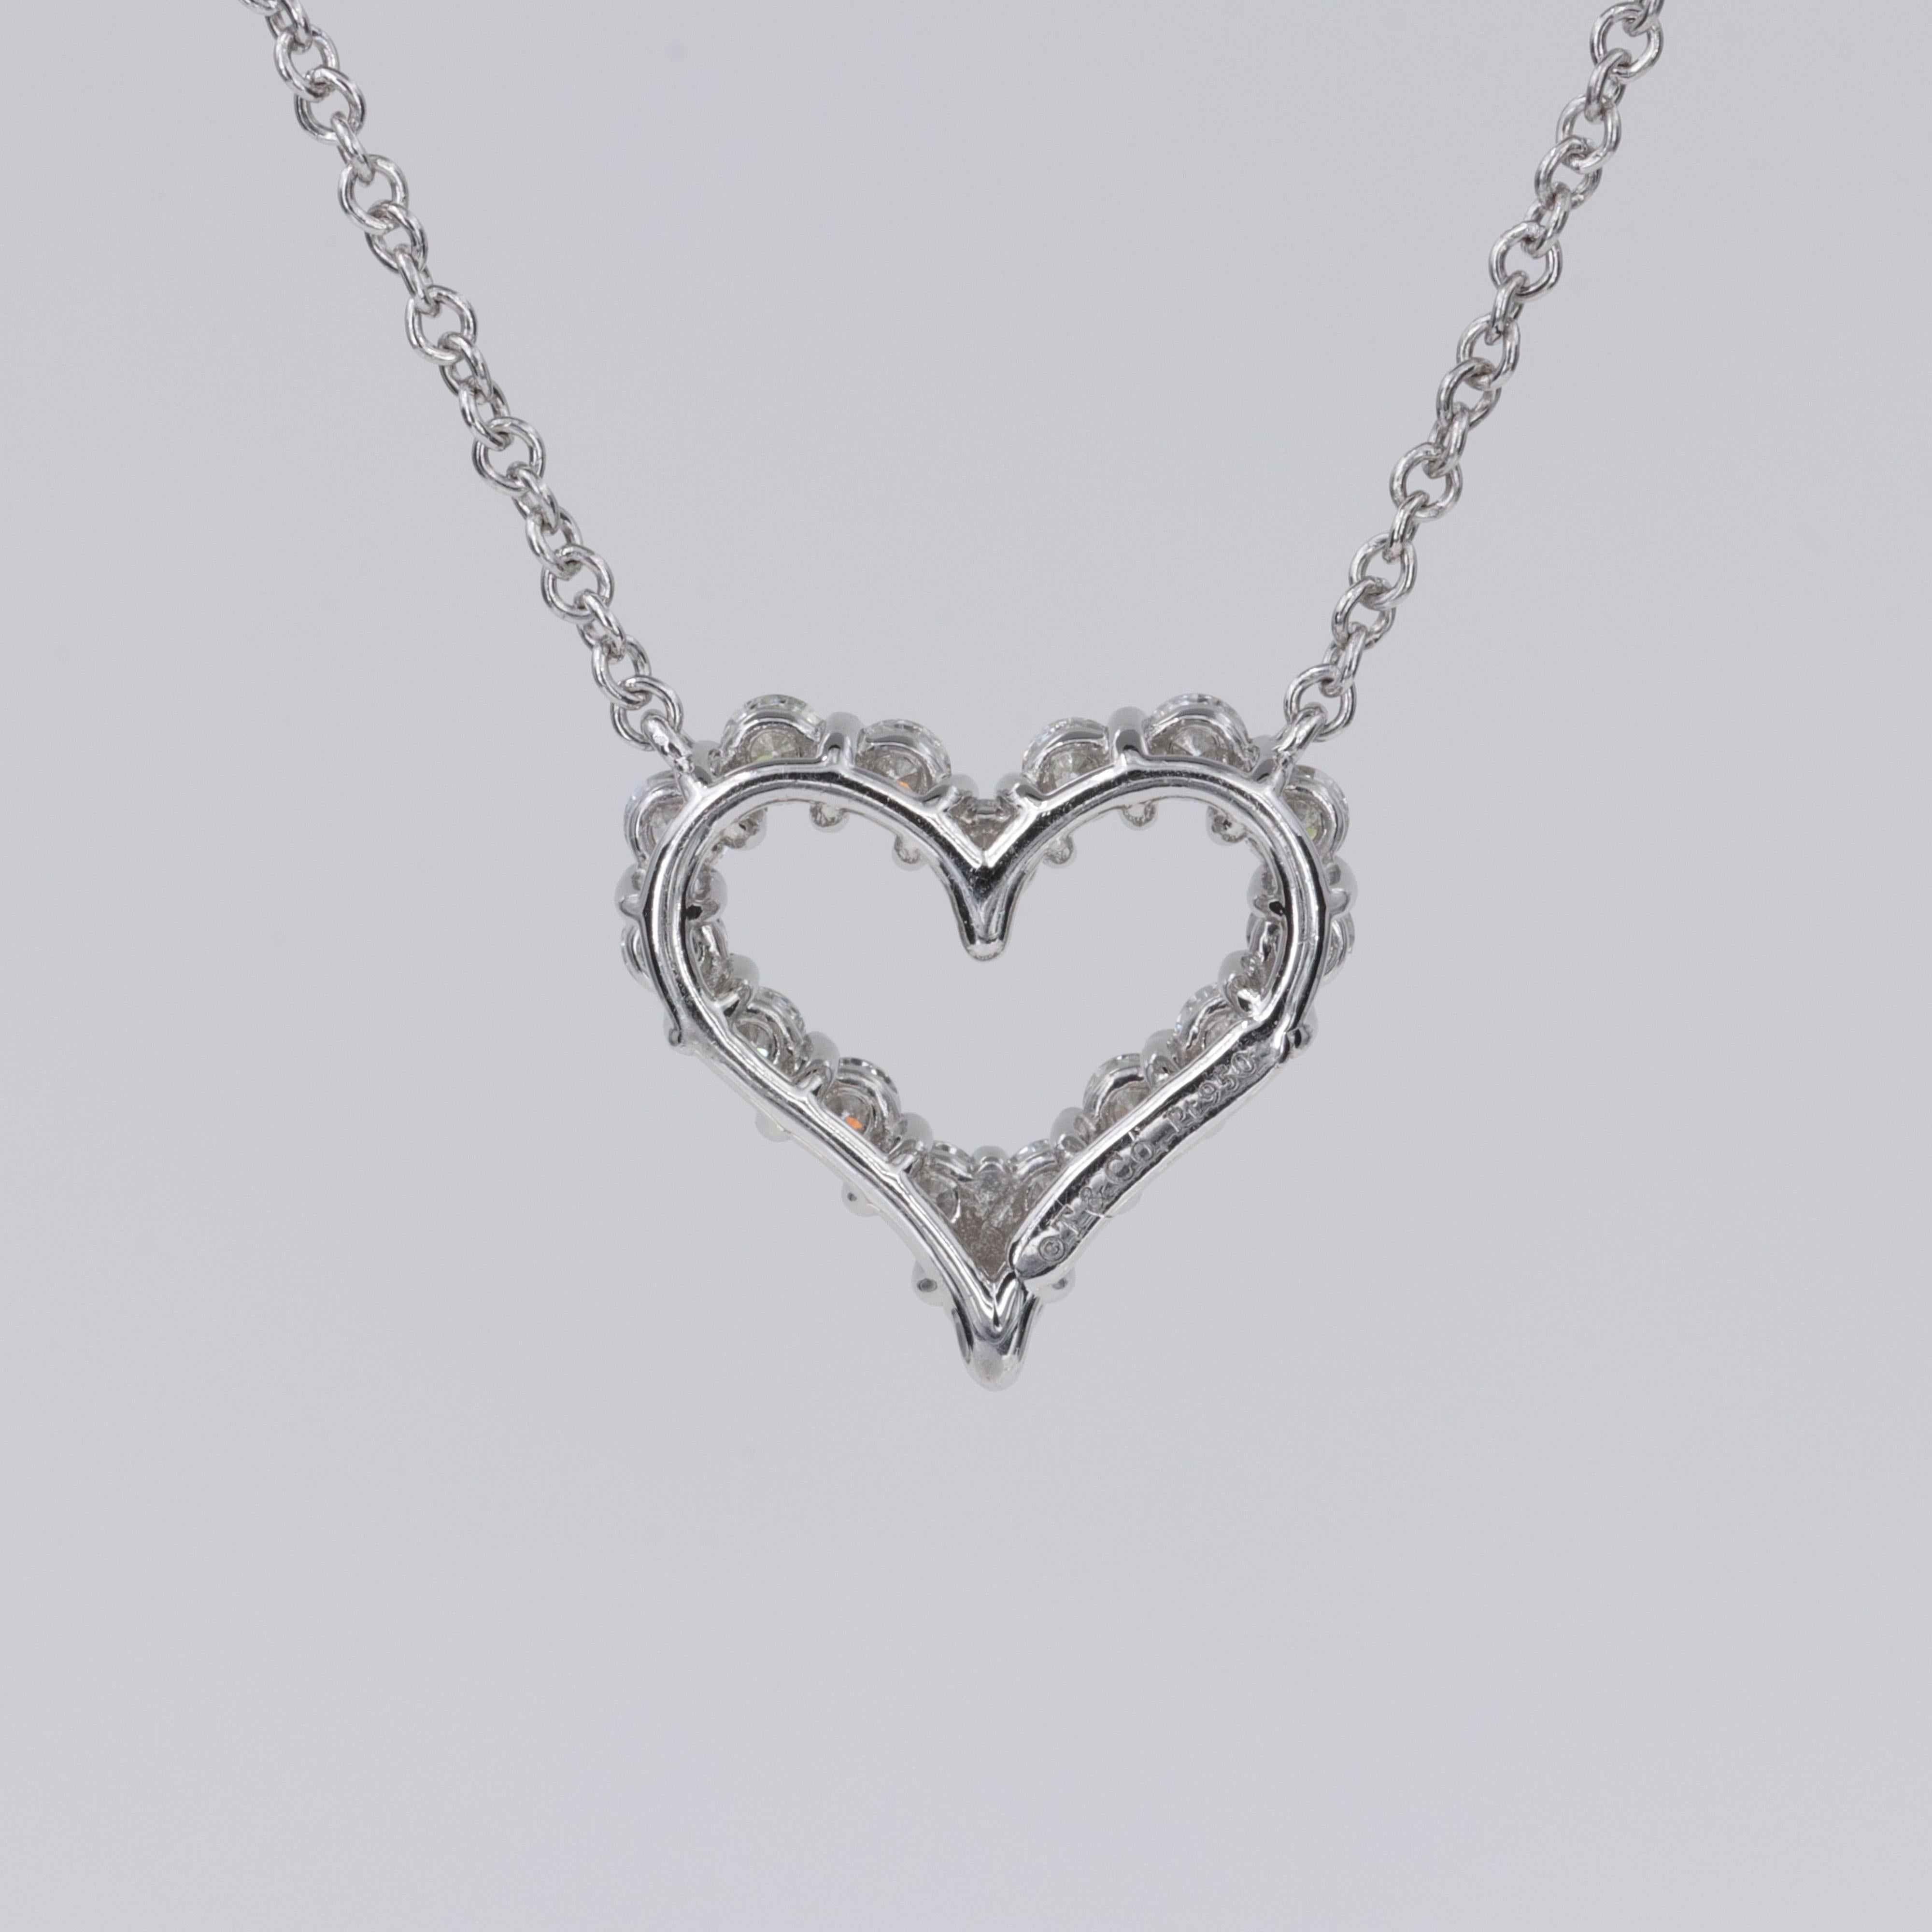 Tiffany & Co. Collier pendentif cœur en platine et diamants

Le parfait petit collier en forme de cœur à superposer ou à porter seul. 

.25 Carats de diamants ronds de qualité, taille brillant, sertis en platine. 

Longueur de la chaîne : 